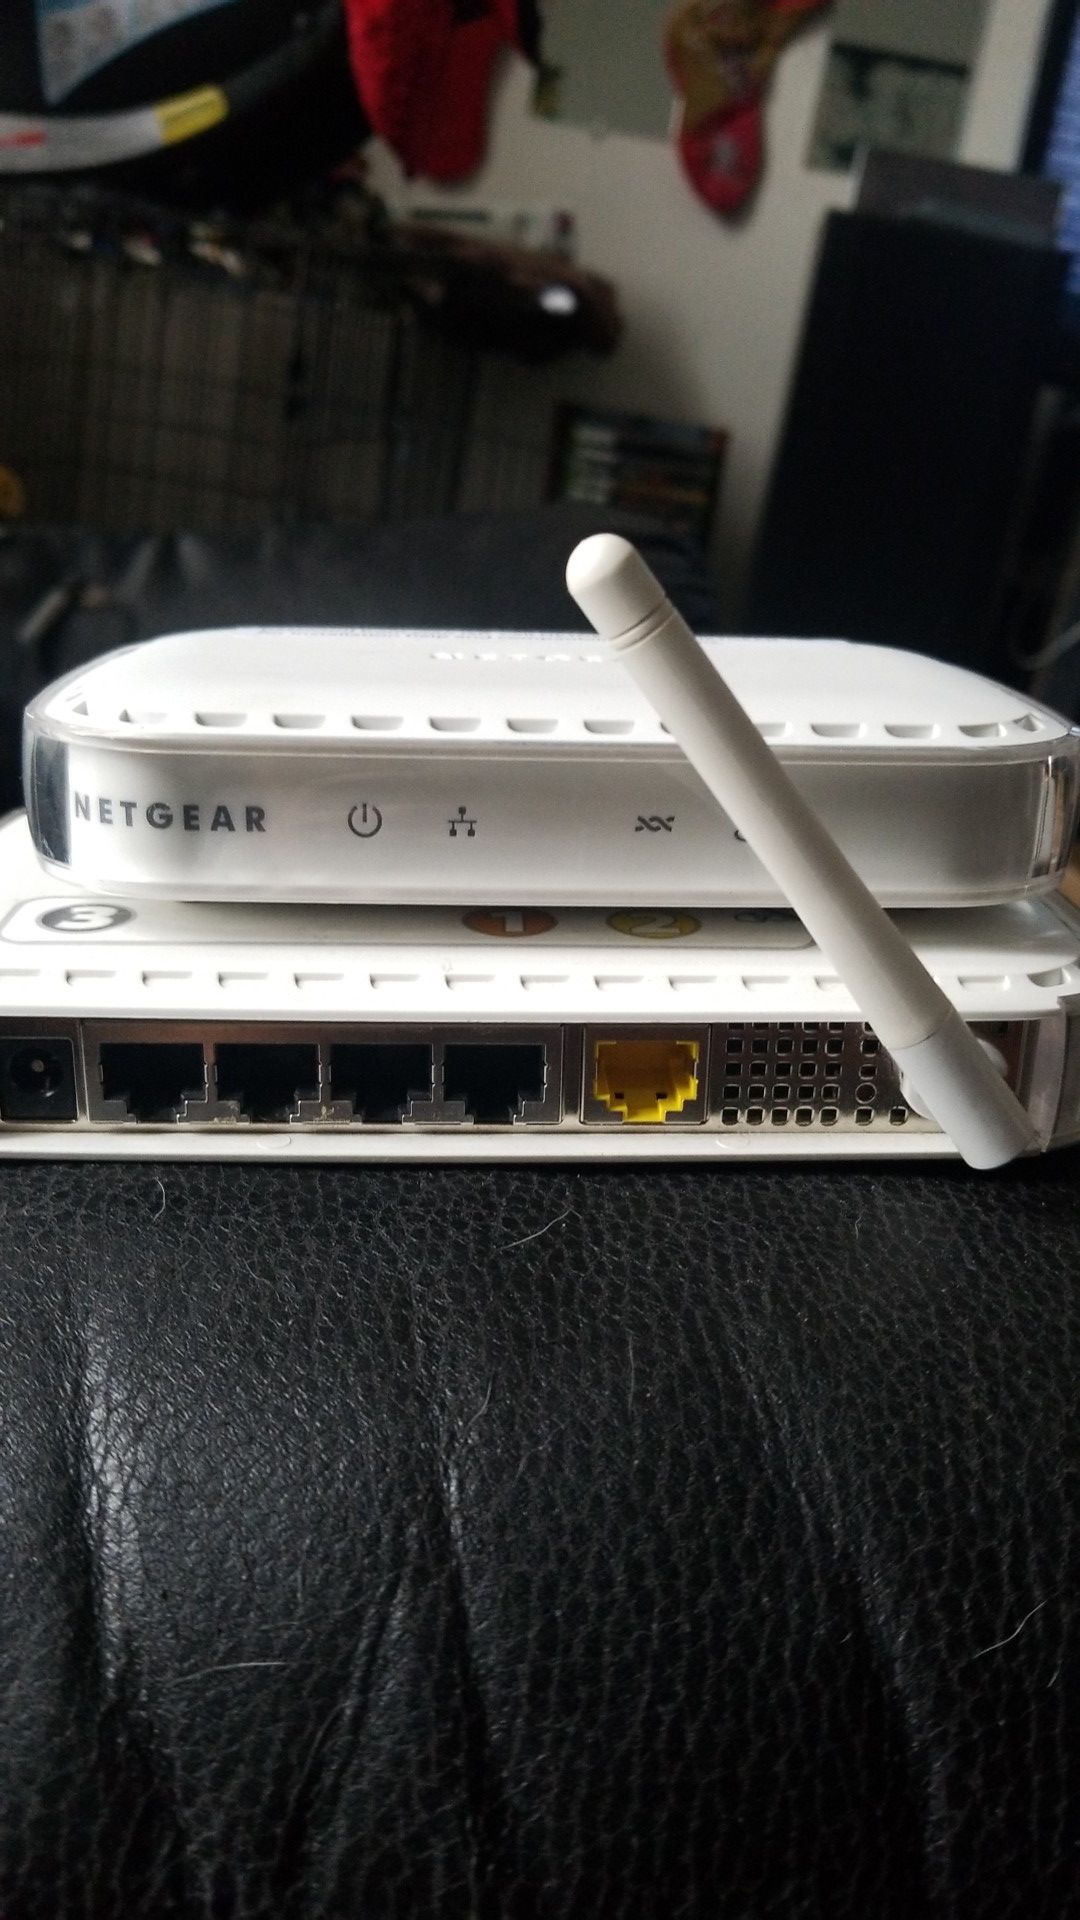 Router and modem. Netgear